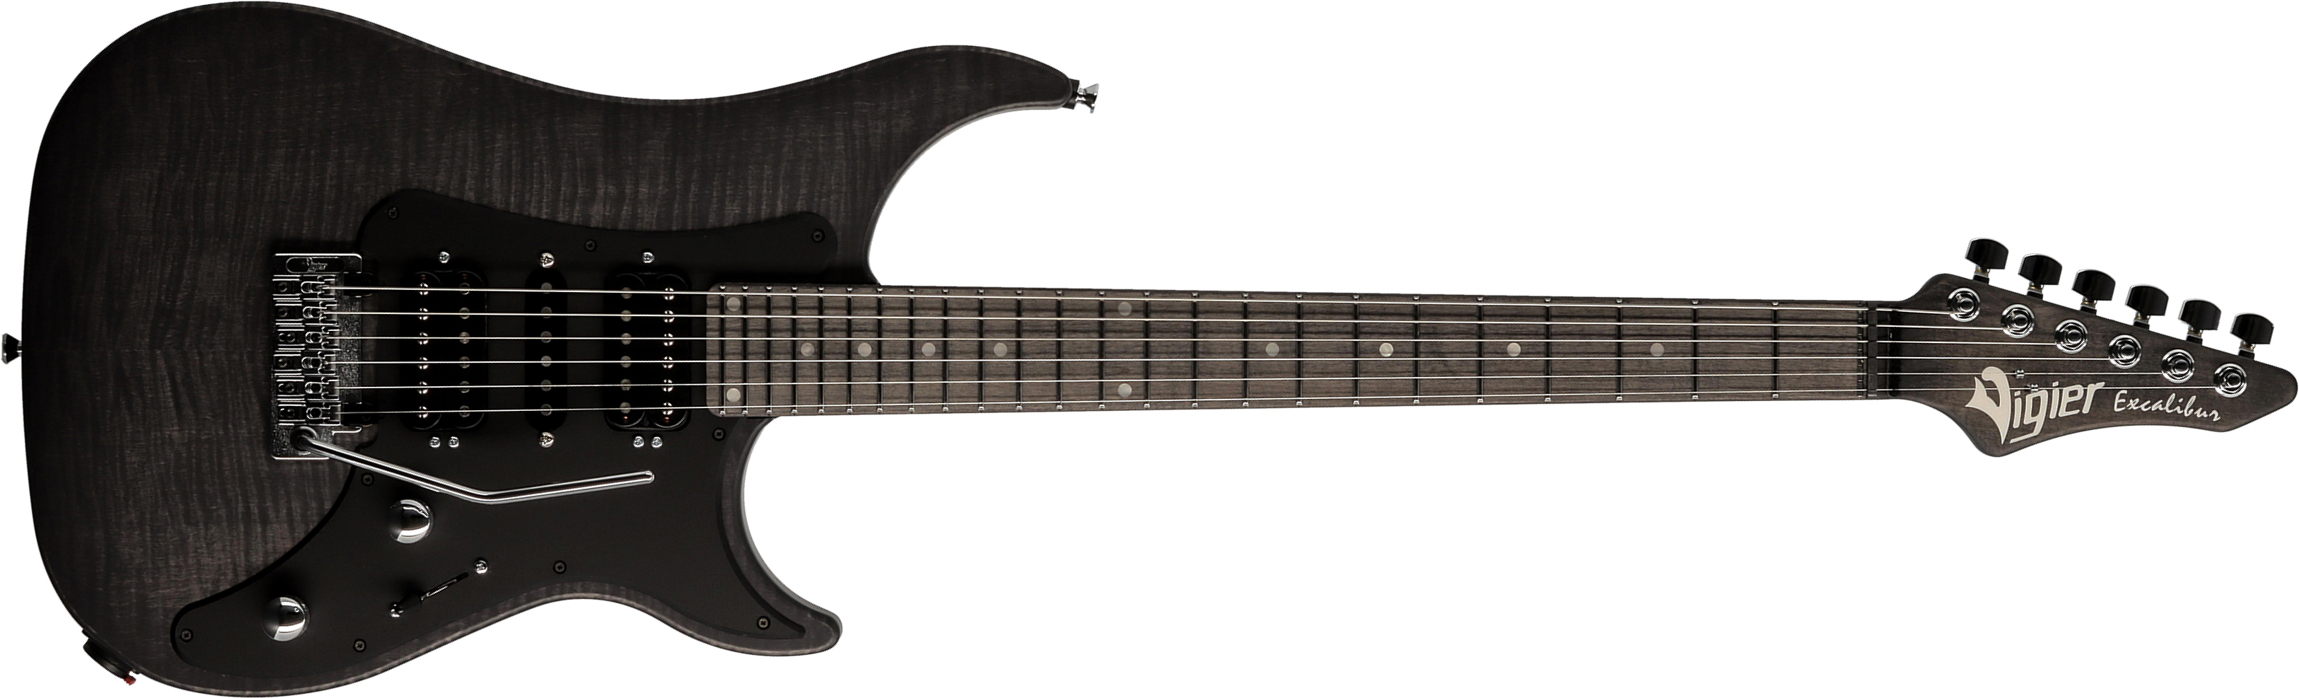 Vigier Excalibur Speciaal Hsh Trem Mn - Velour Noir - Metal electric guitar - Main picture